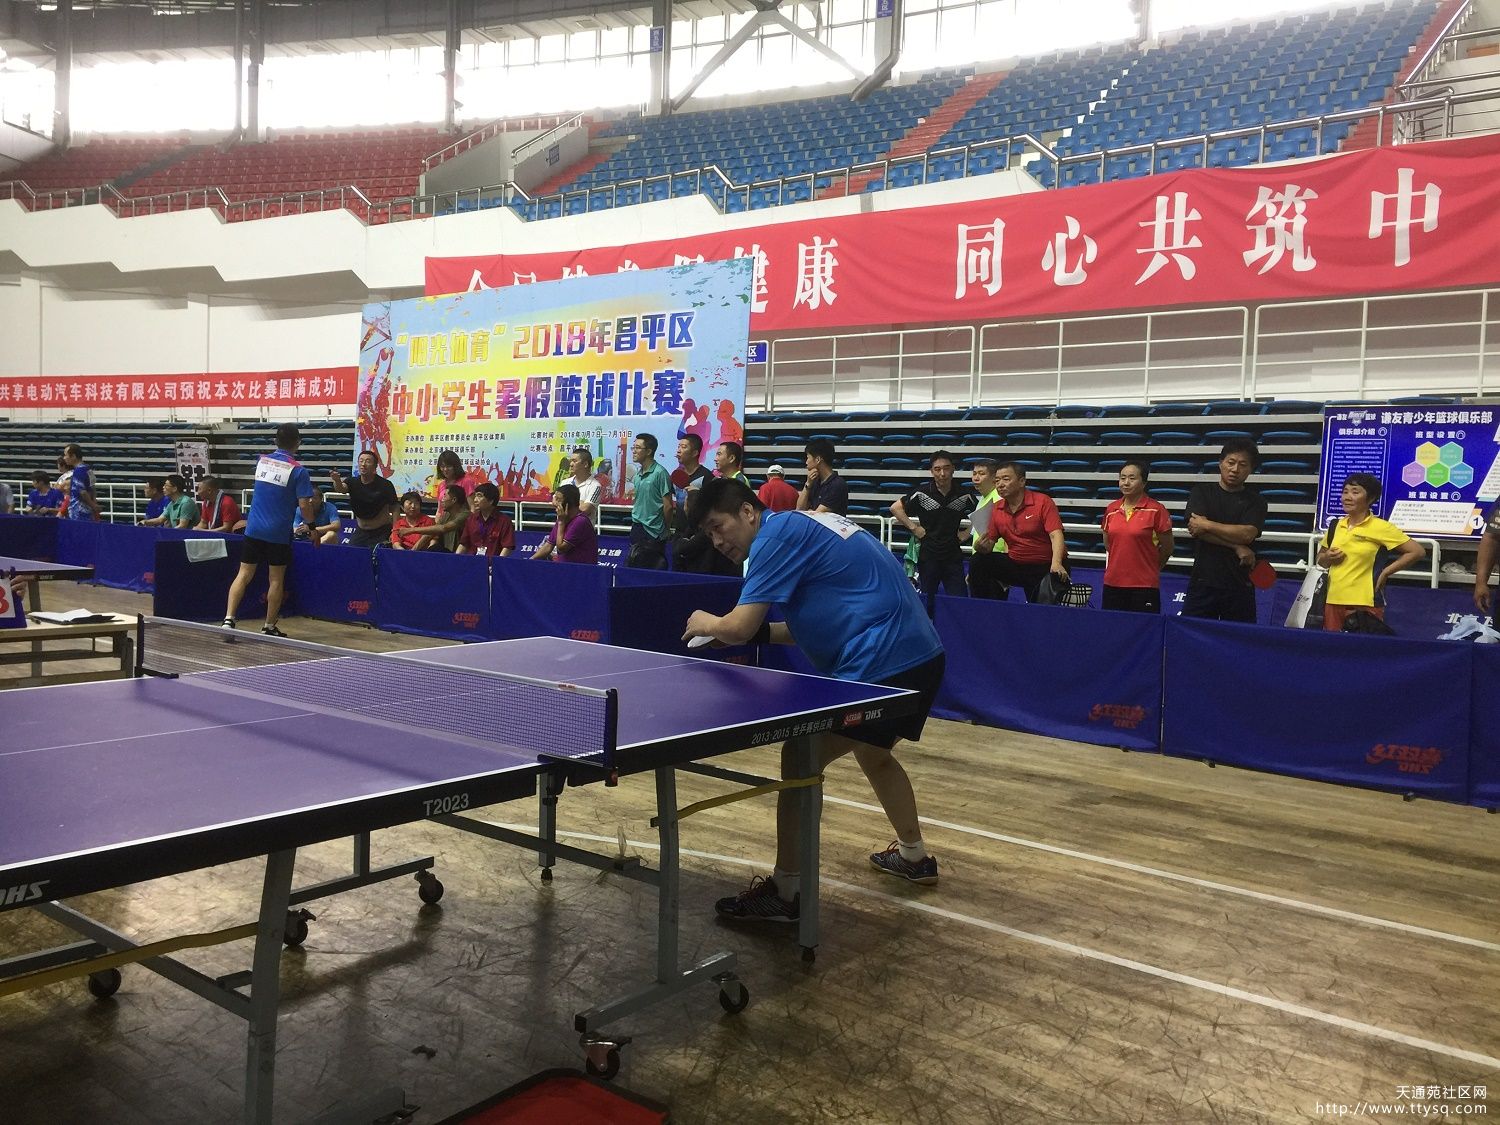 天北街道组织参加昌平区第十二届“和谐杯”乒乓球比赛